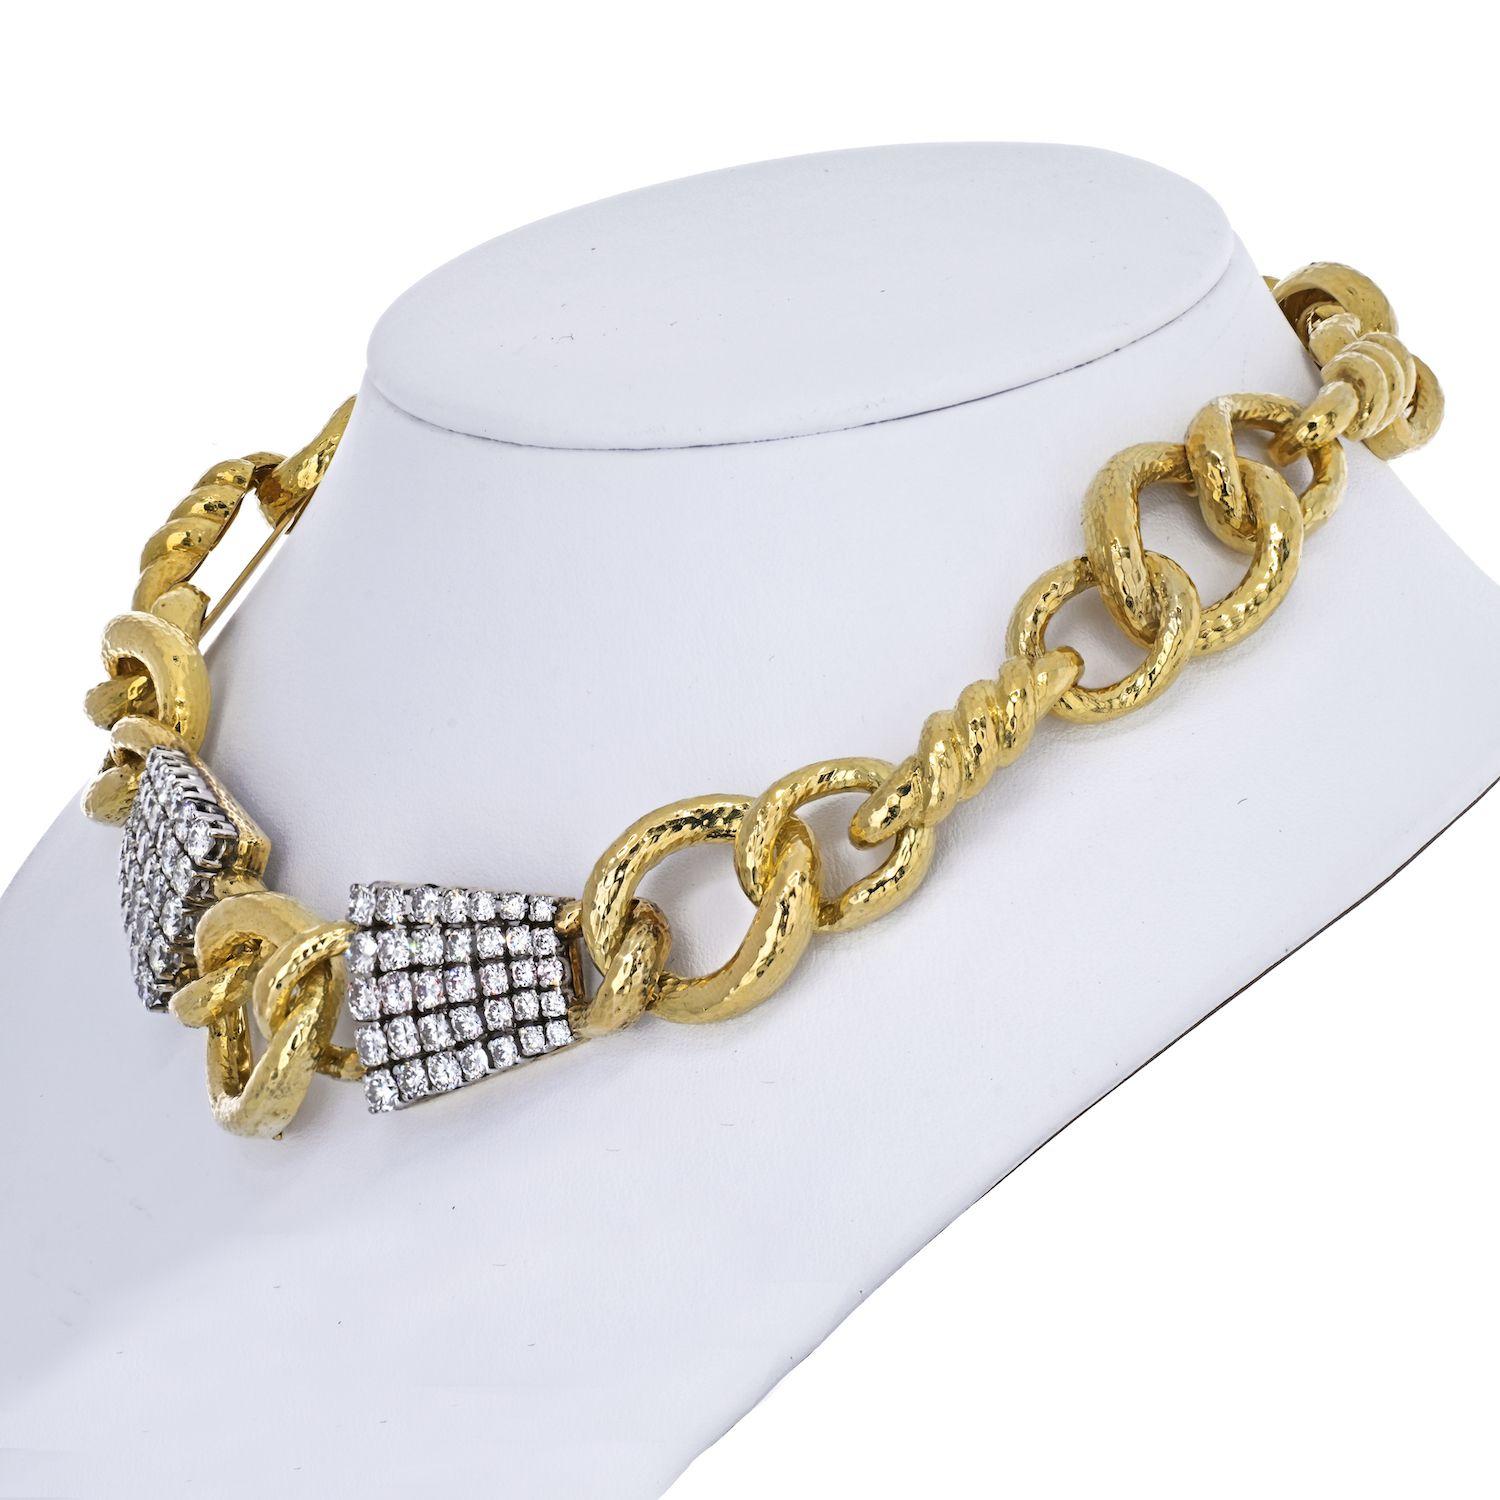 Le collier à diamants Twisted Rope Link de David Webb est un véritable chef-d'œuvre, élégamment réalisé avec des diamants taille brillant, de l'or 18 carats martelé et du platine. Cette pièce exquise mesure 16 pouces de long et pèse 128 grammes, ce